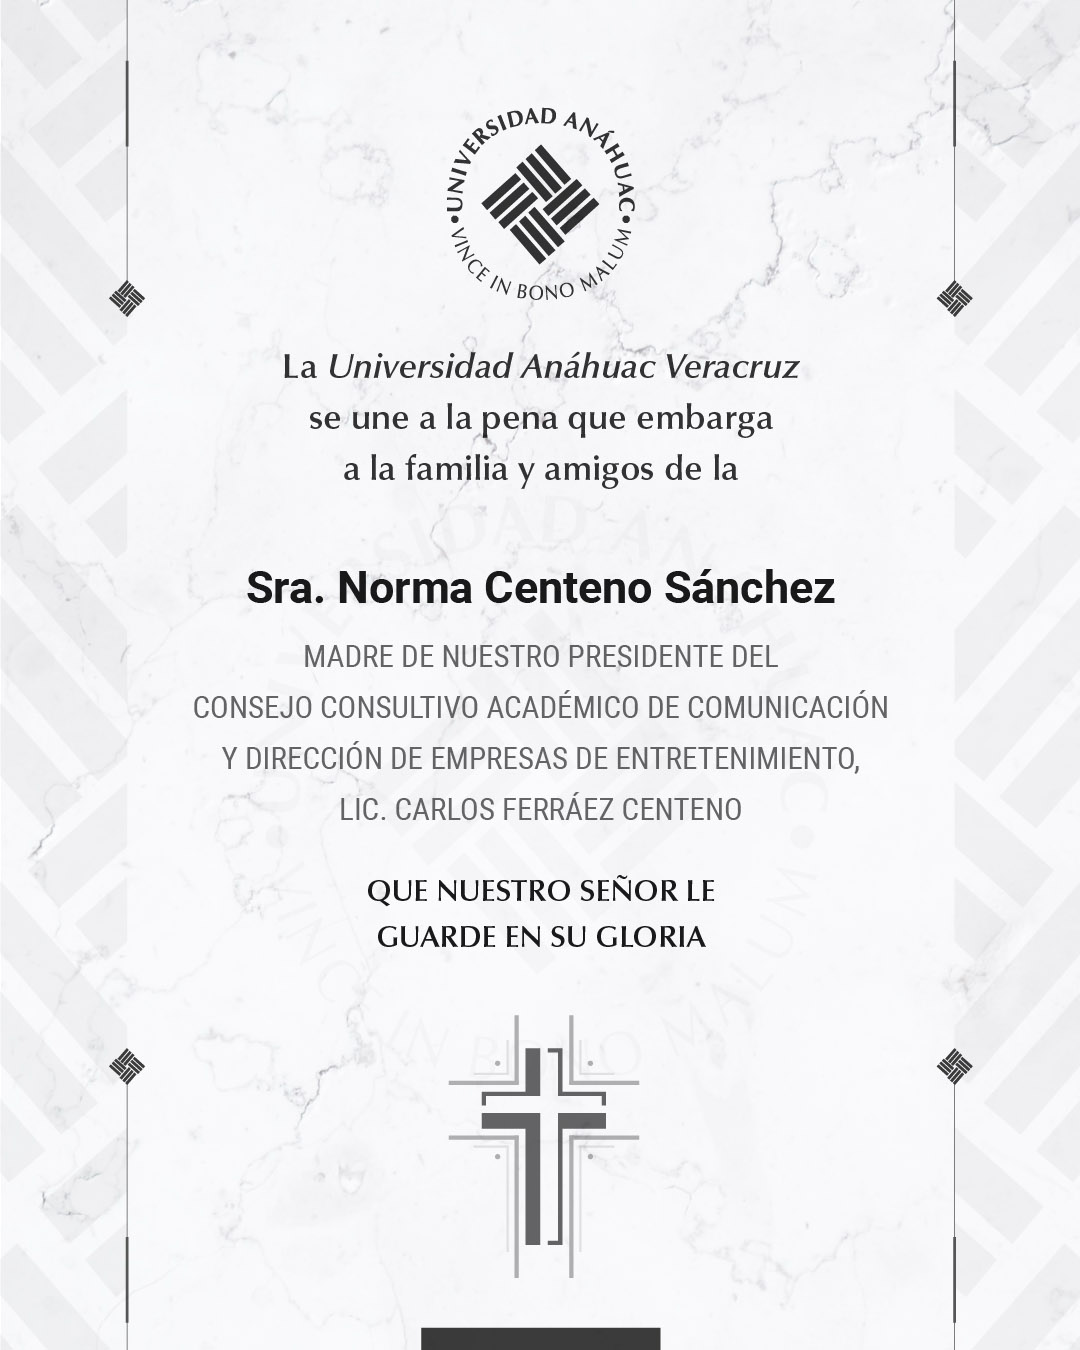 10 / 17 - Sra. Norma Centeno Sánchez